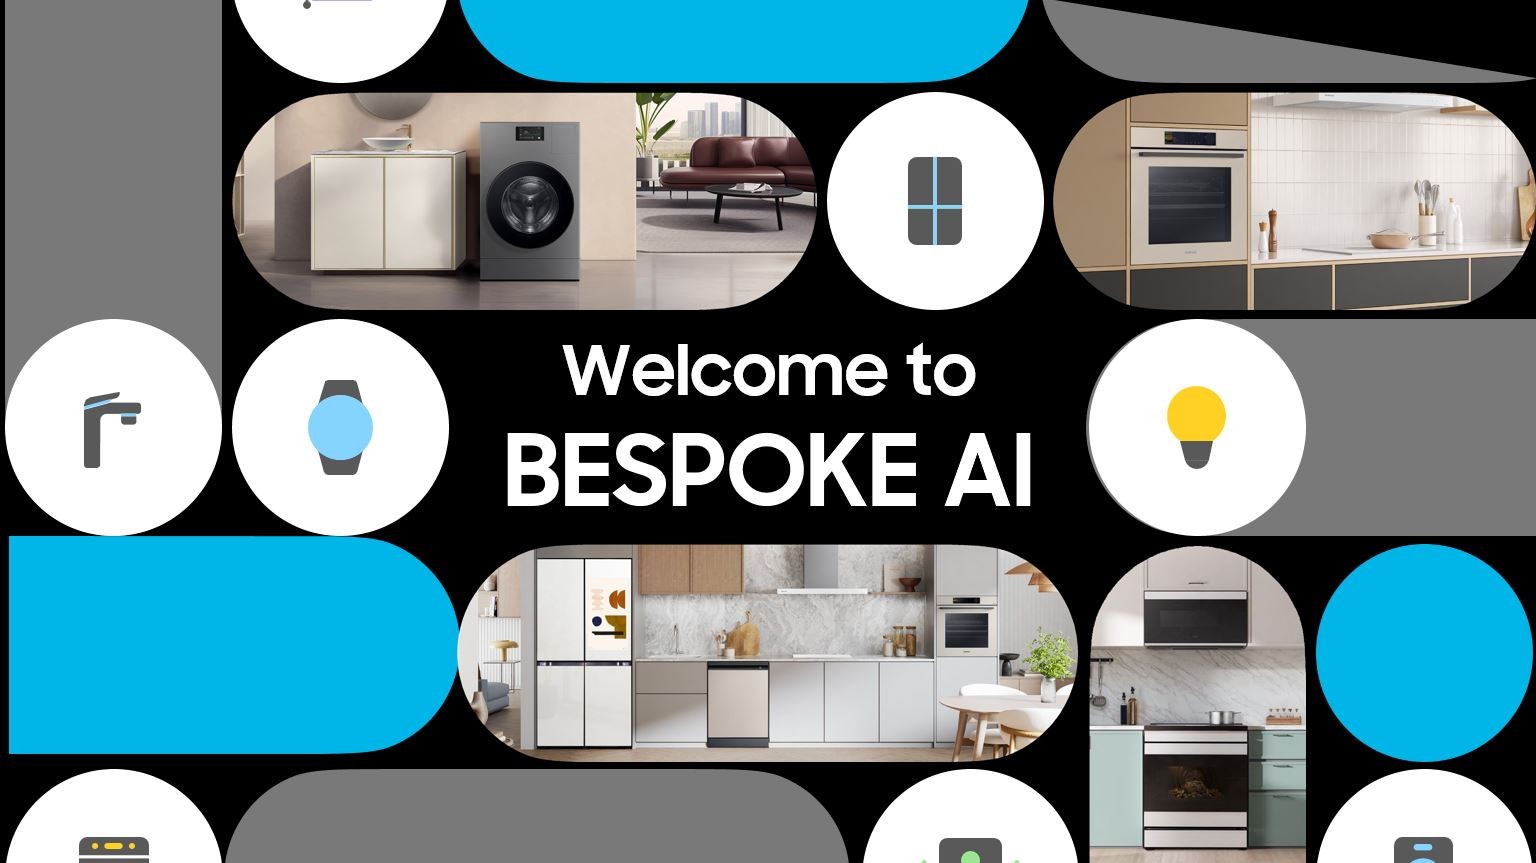 Welcome to BESPOKE AI – Samsung przestawia najnowszą linię inteligentnych urządzeń AGD